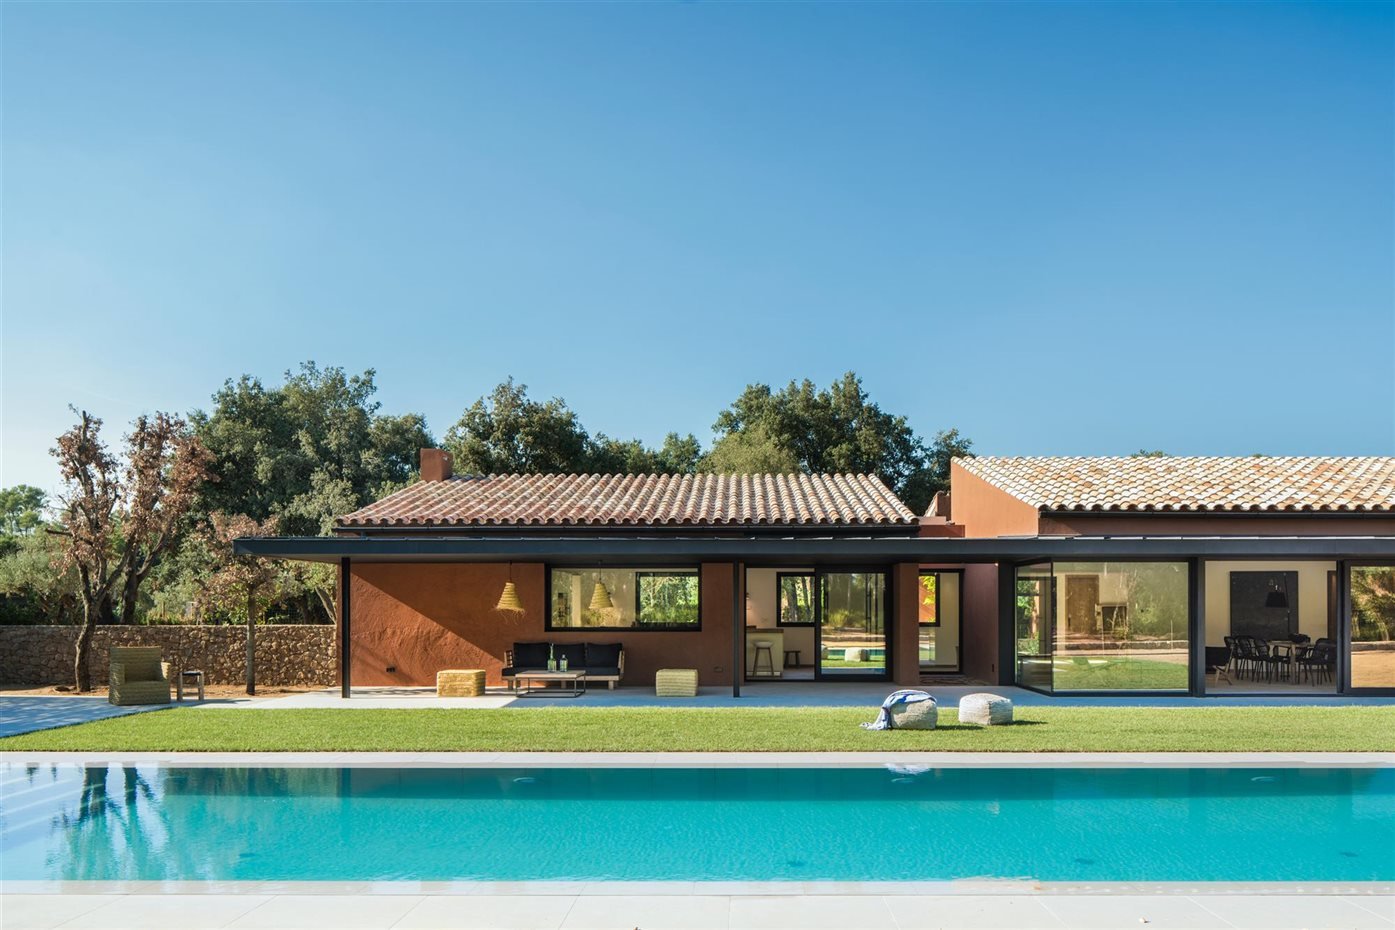 Casa en el campo con techo de tejas de color rojo y paredes de terracota con piscina